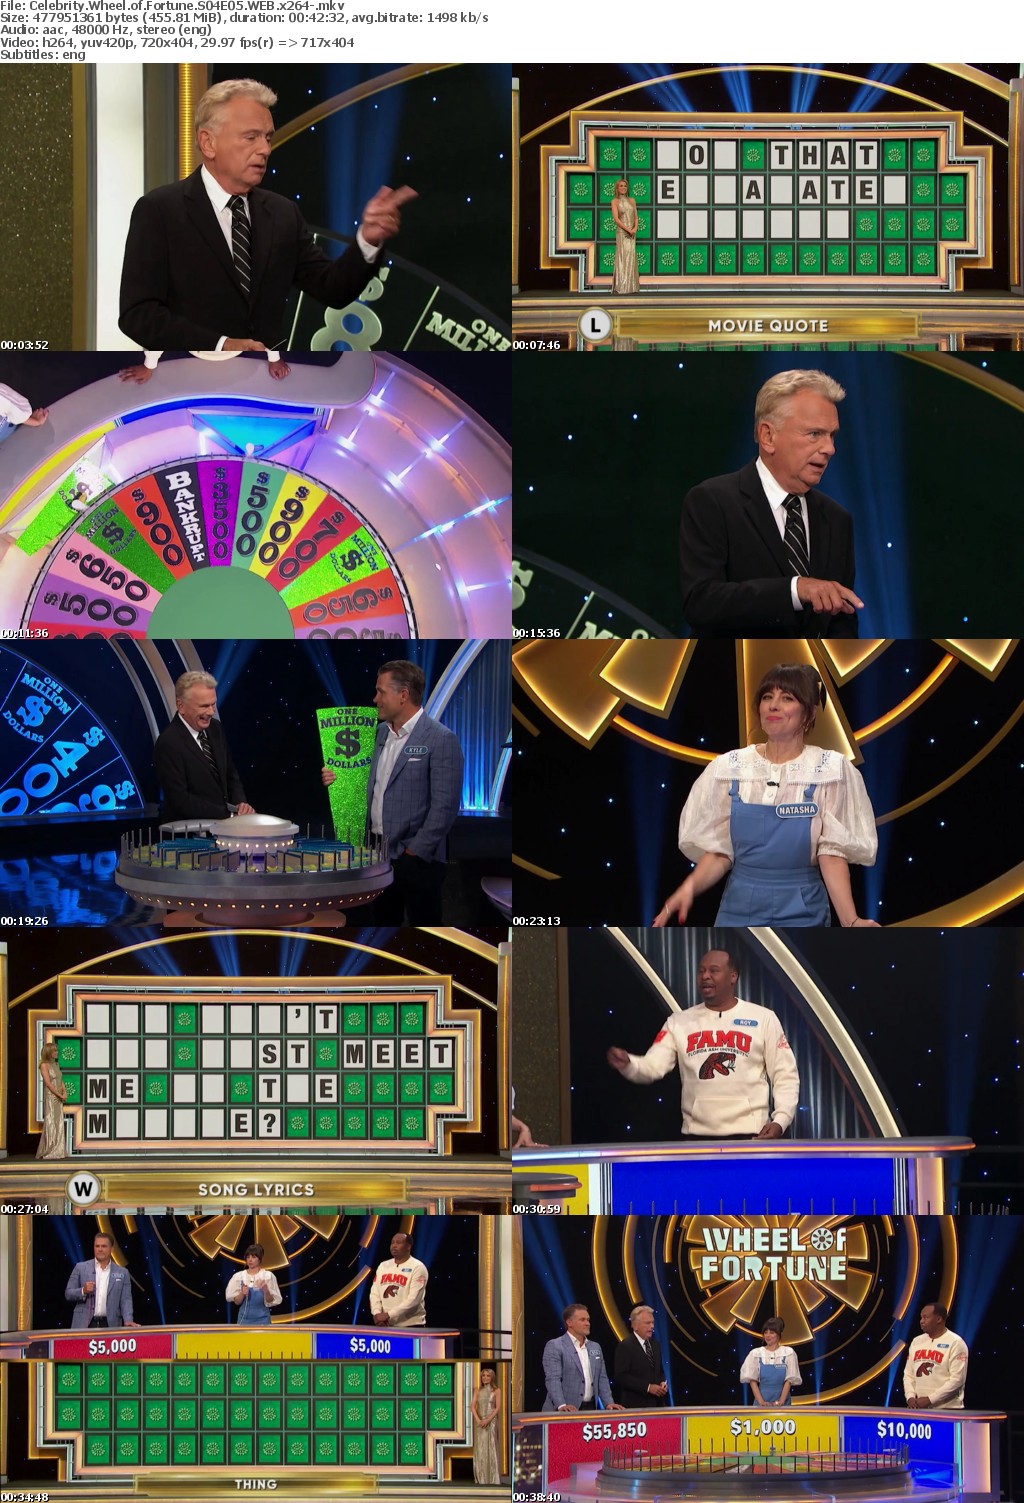 Celebrity Wheel of Fortune S04E05 WEB x264-